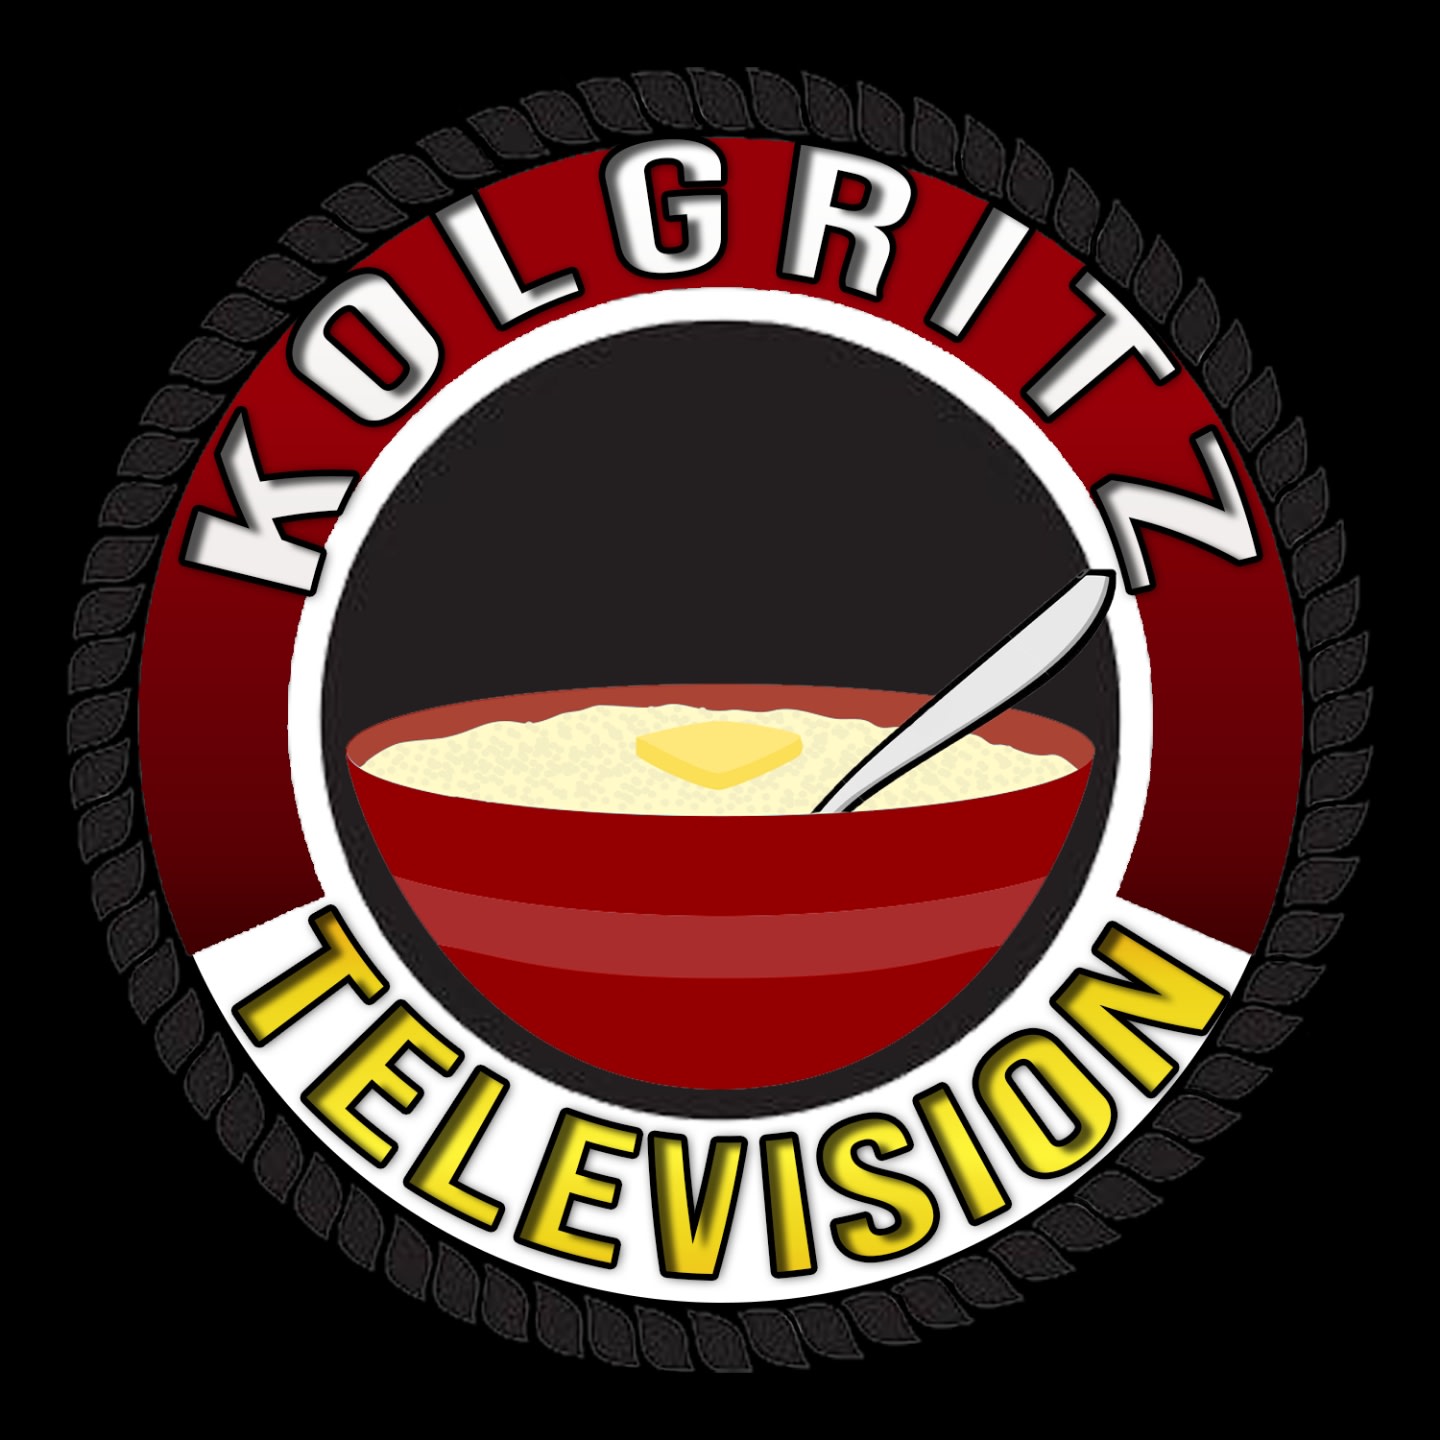 Kolgritz TV